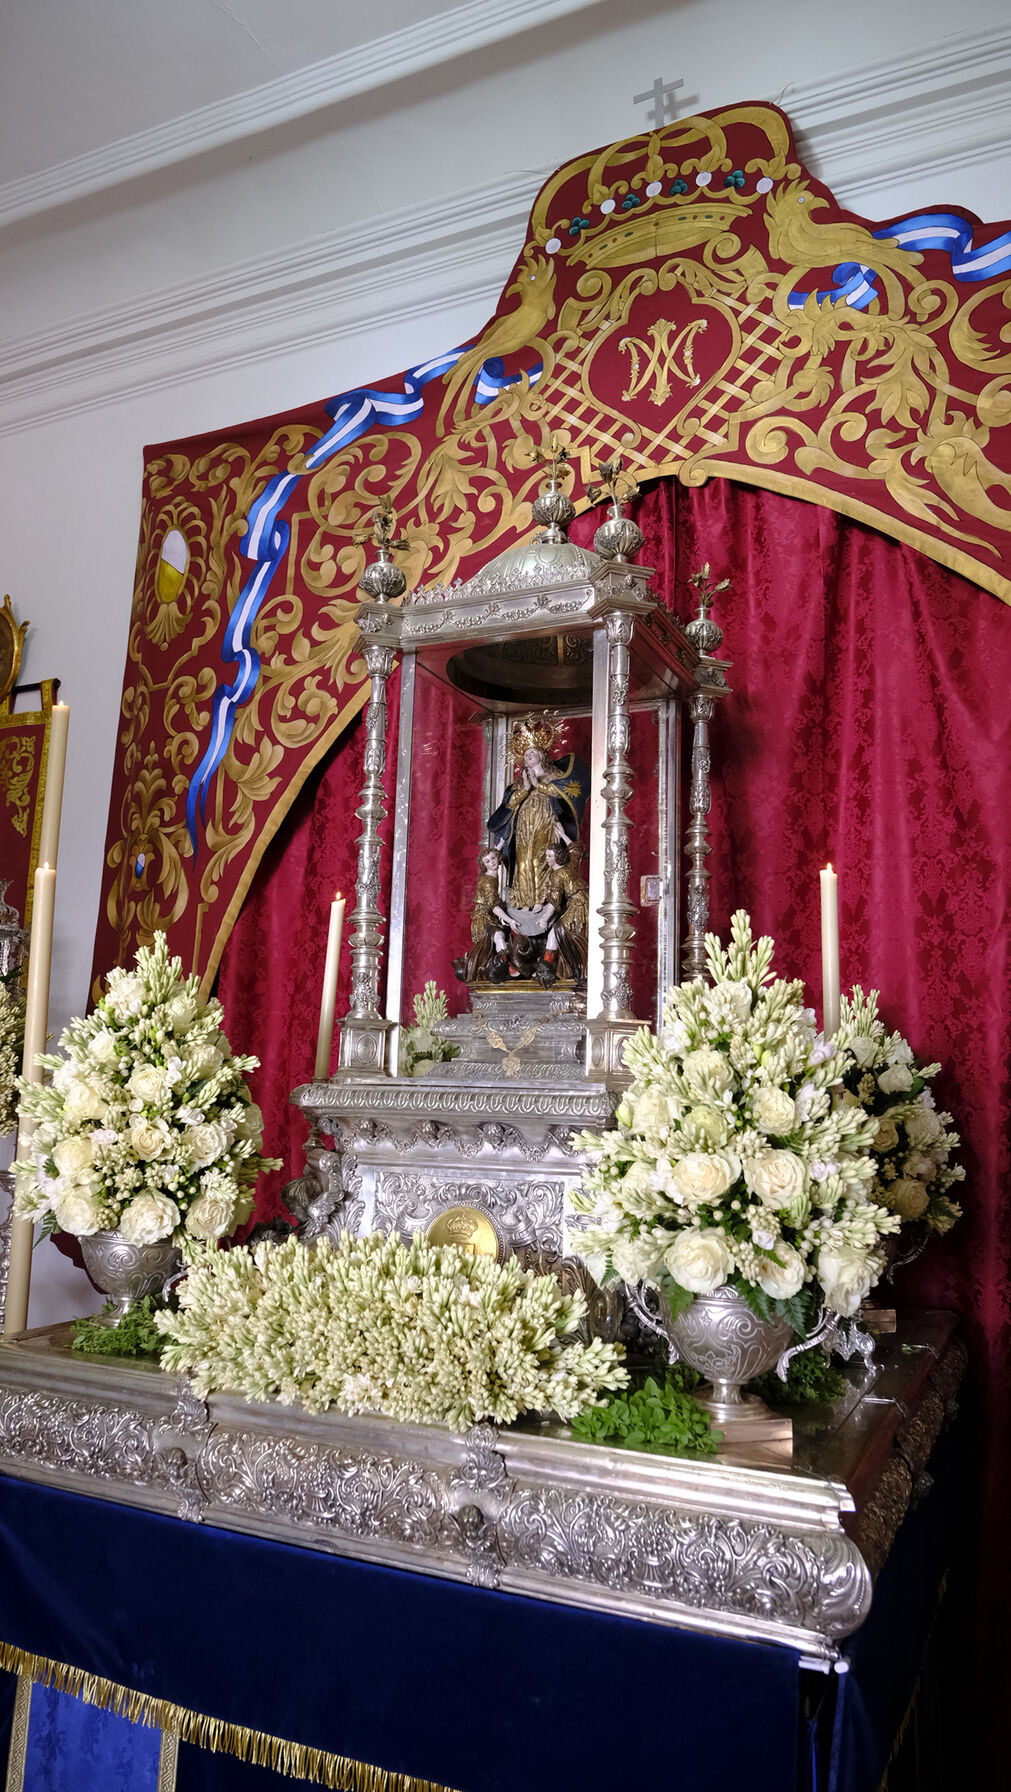 La Virgen del Saliente es venerada por los fieles en su Santuario